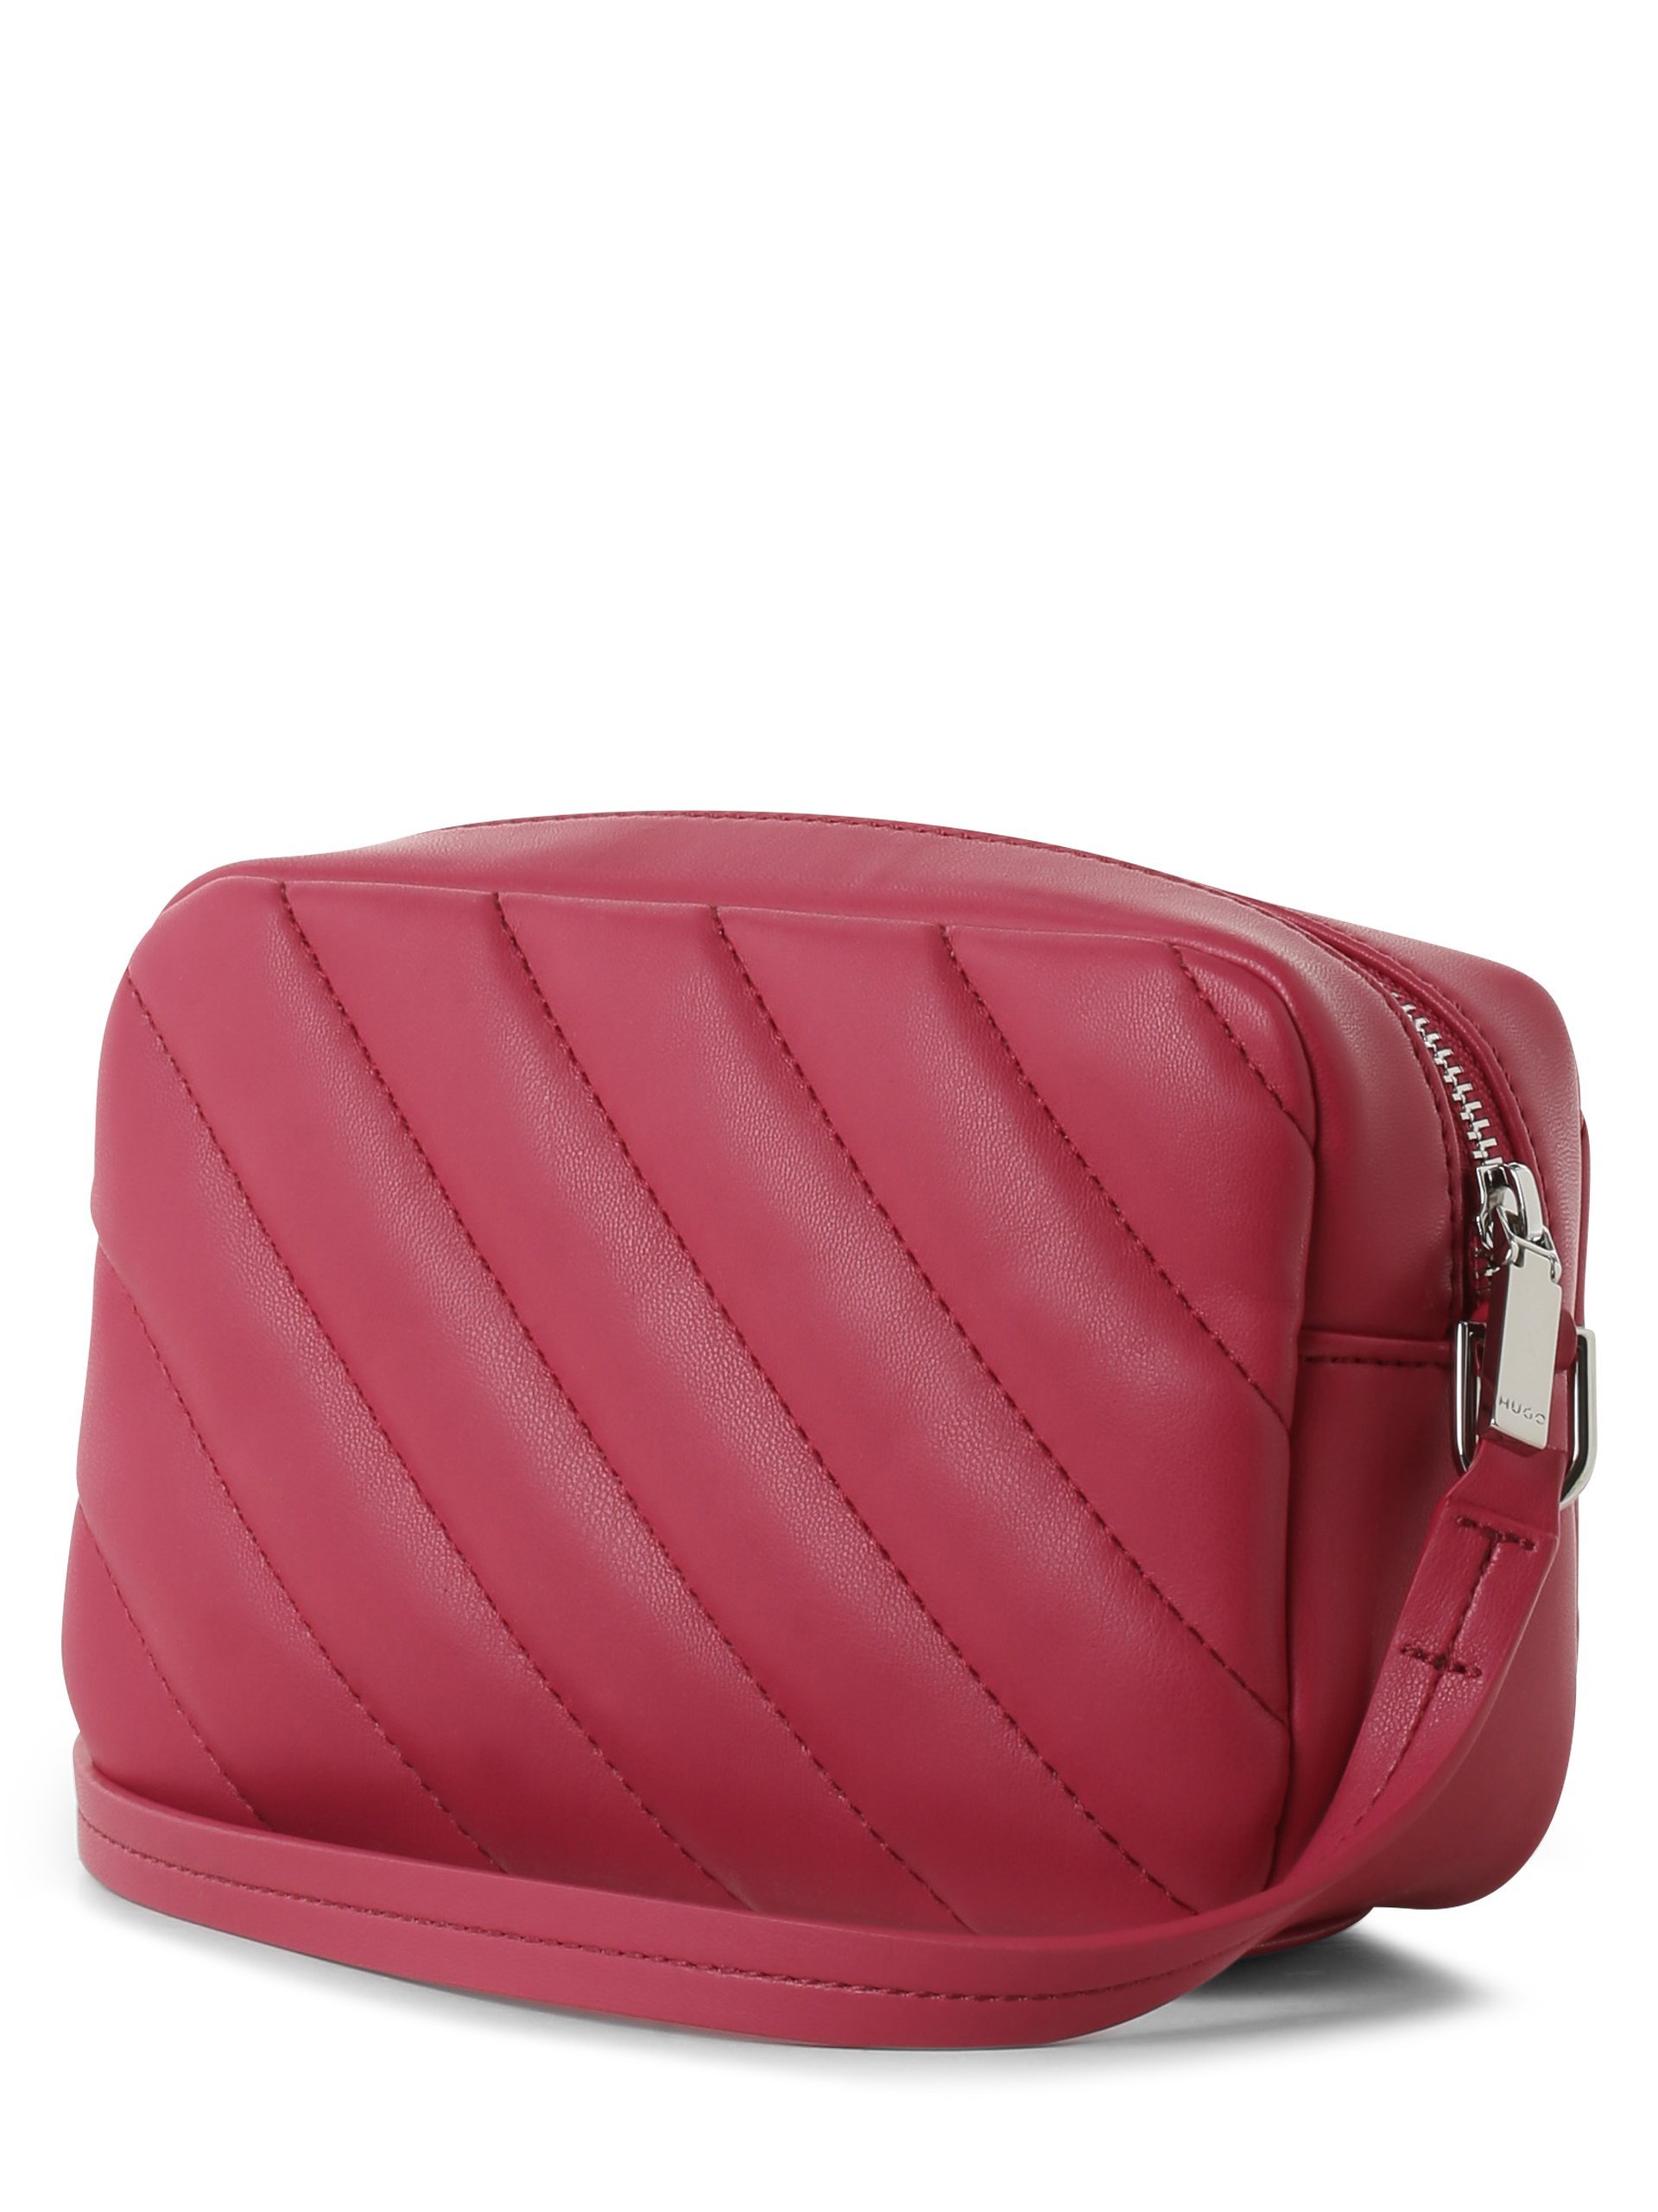 HUGO Damen Handtasche - Lizzie online kaufen